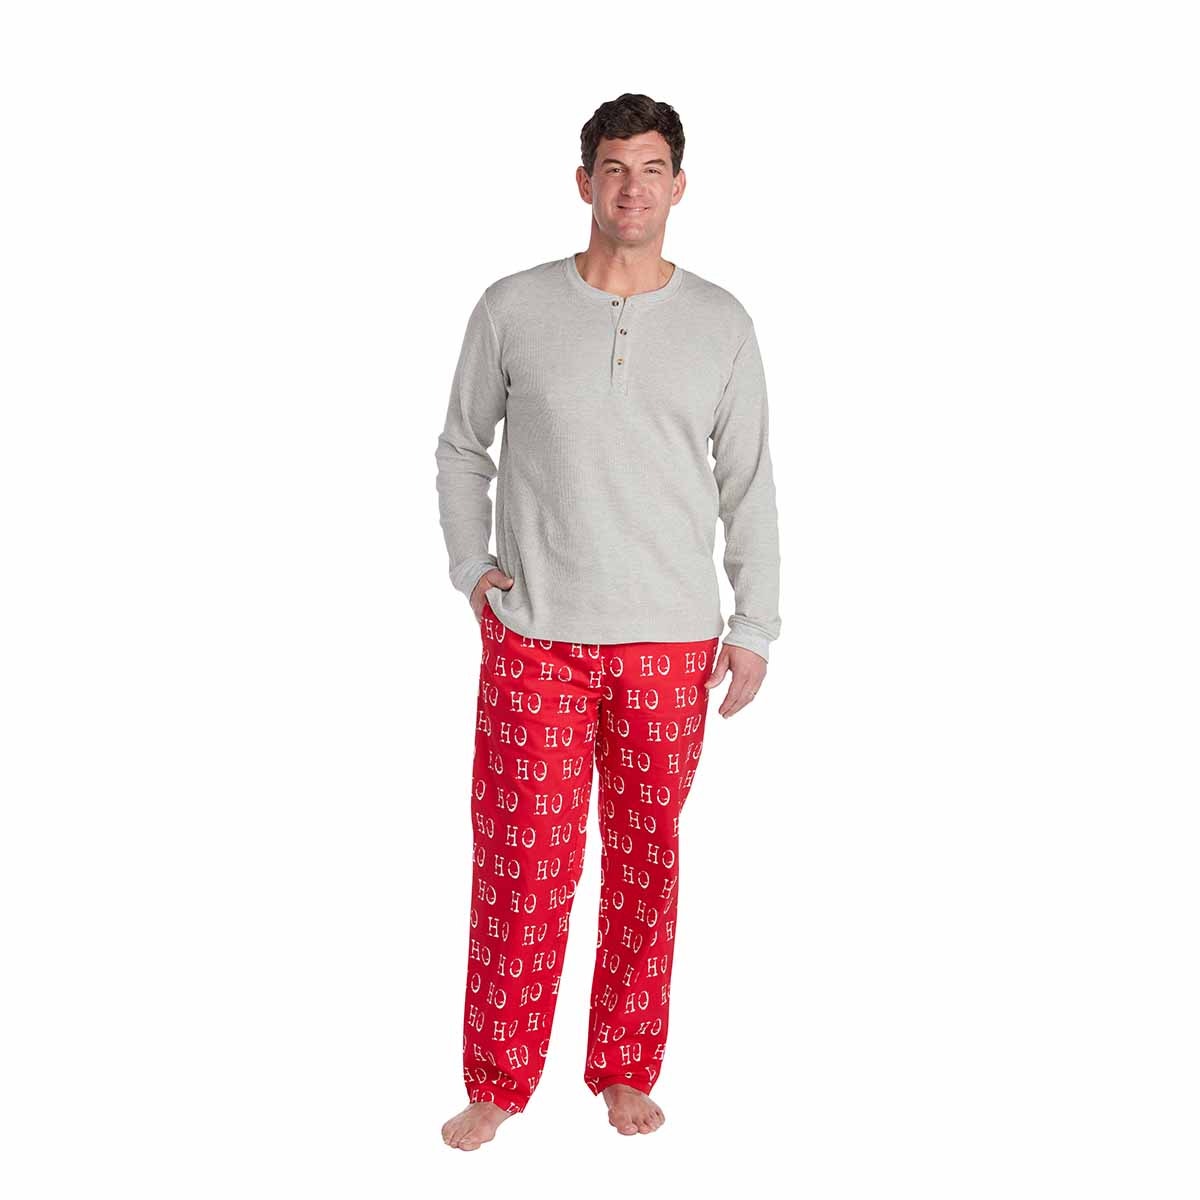 Christmas Pajama Set